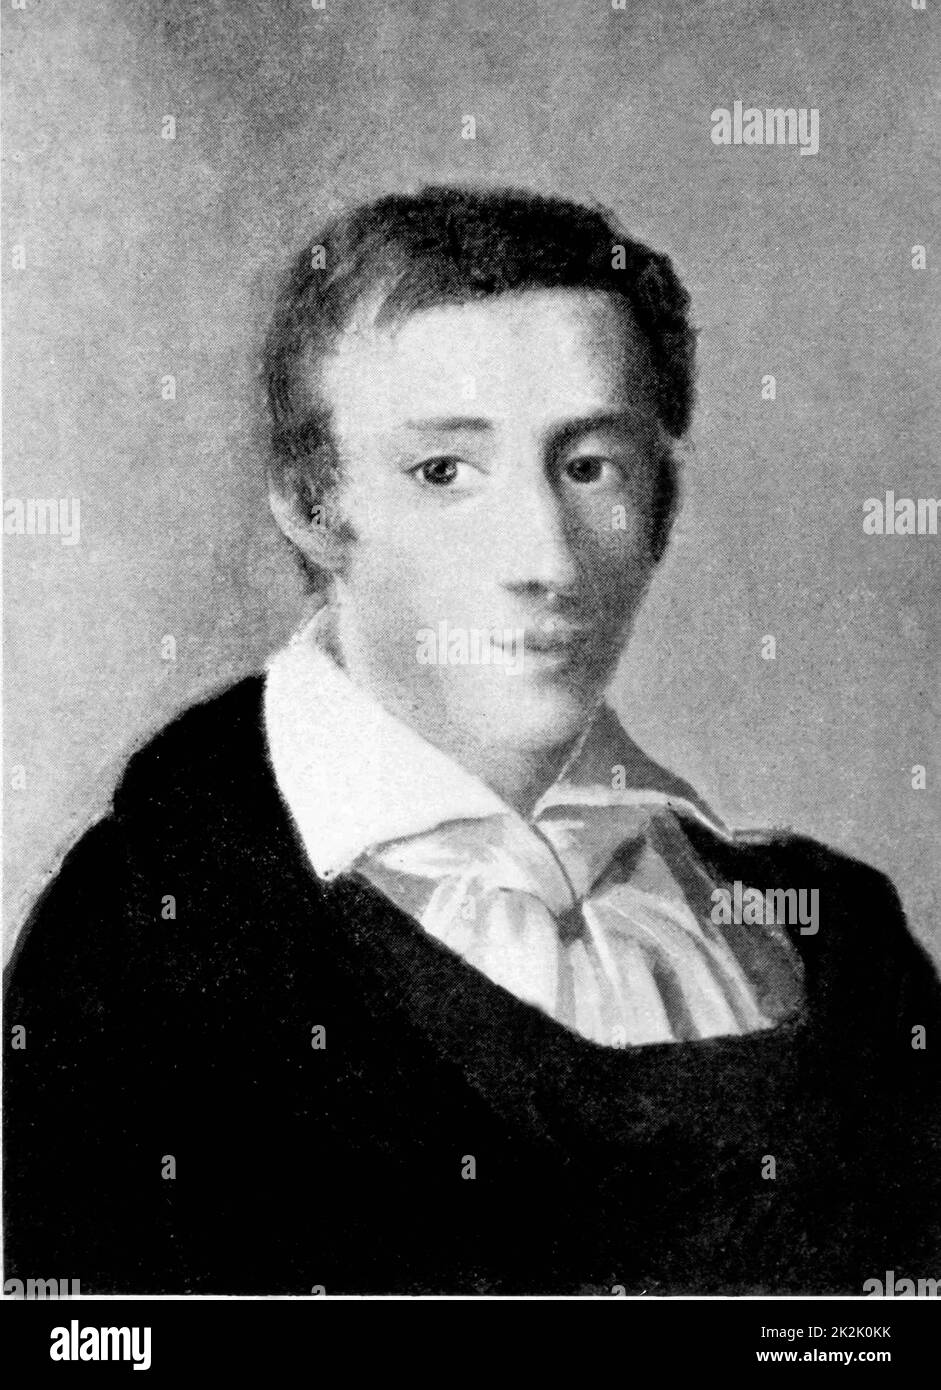 Frédéric François Chopin, 1810 - 1849), polnischer Komponist und Pianist. Porträt des jungen Chopin von Mieroszewski Ambrozy (1802-1884) vom 1829. Stockfoto